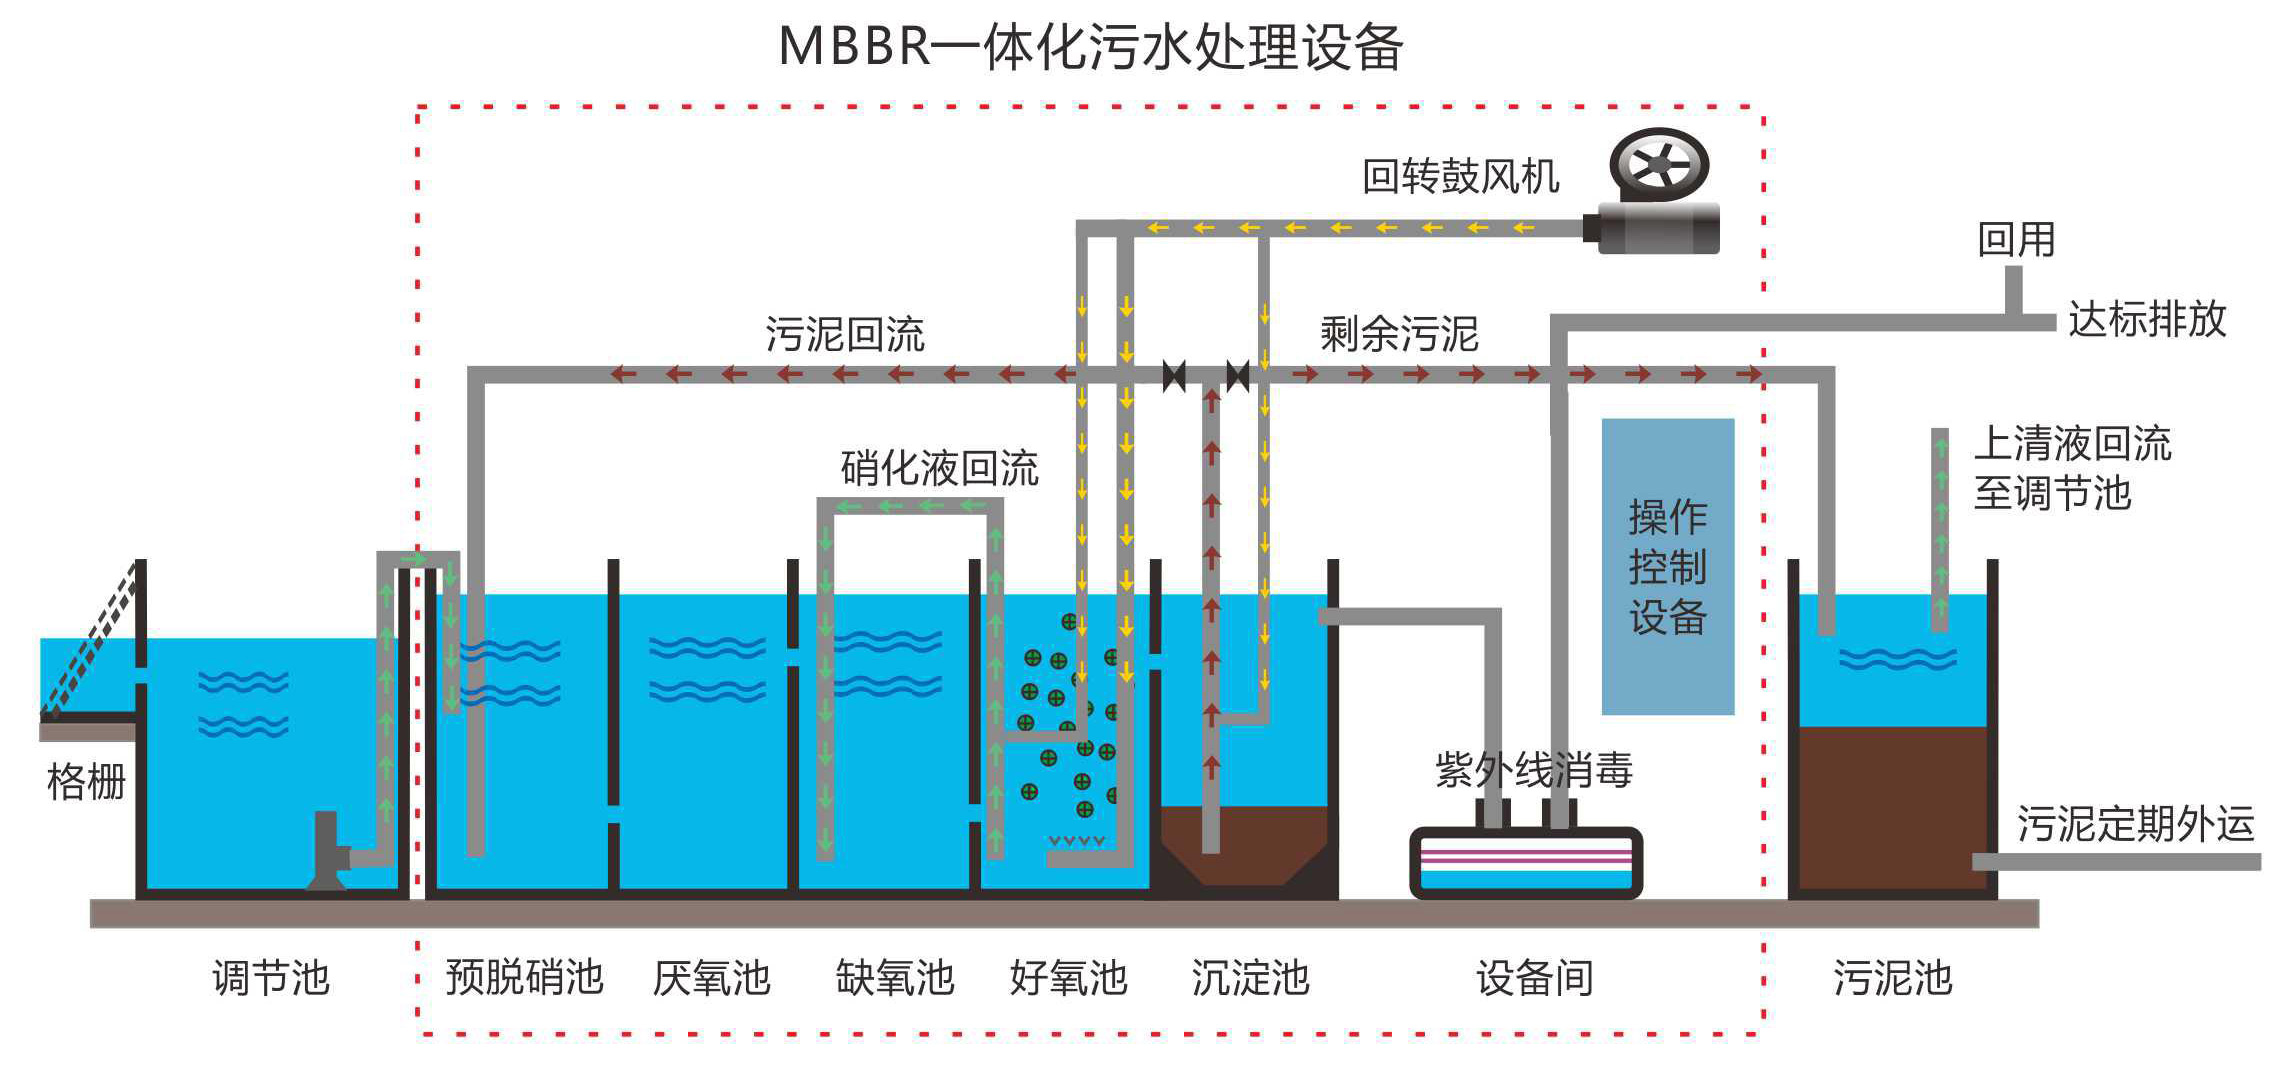 MBBR一体化污水处理设备在医院污水处理行业领域中的应用与前景分析